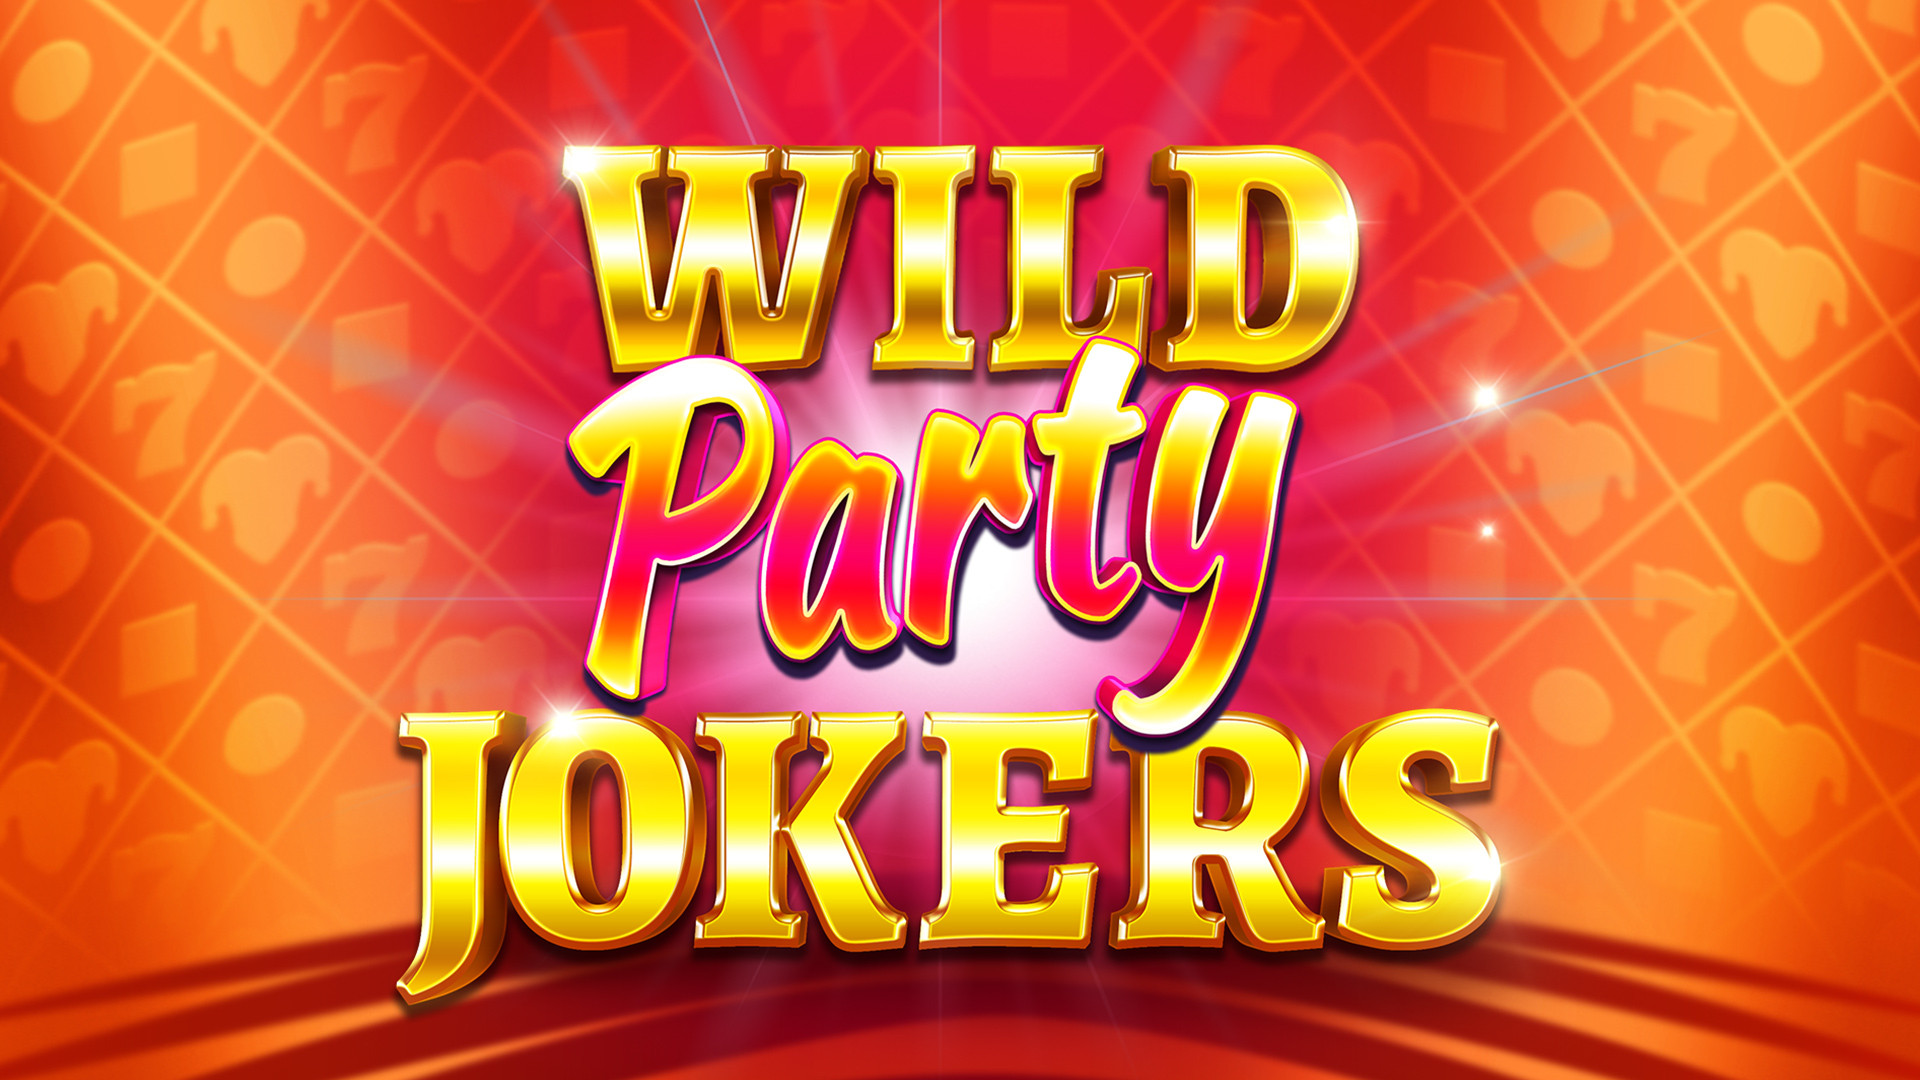 Wild Party Jokers